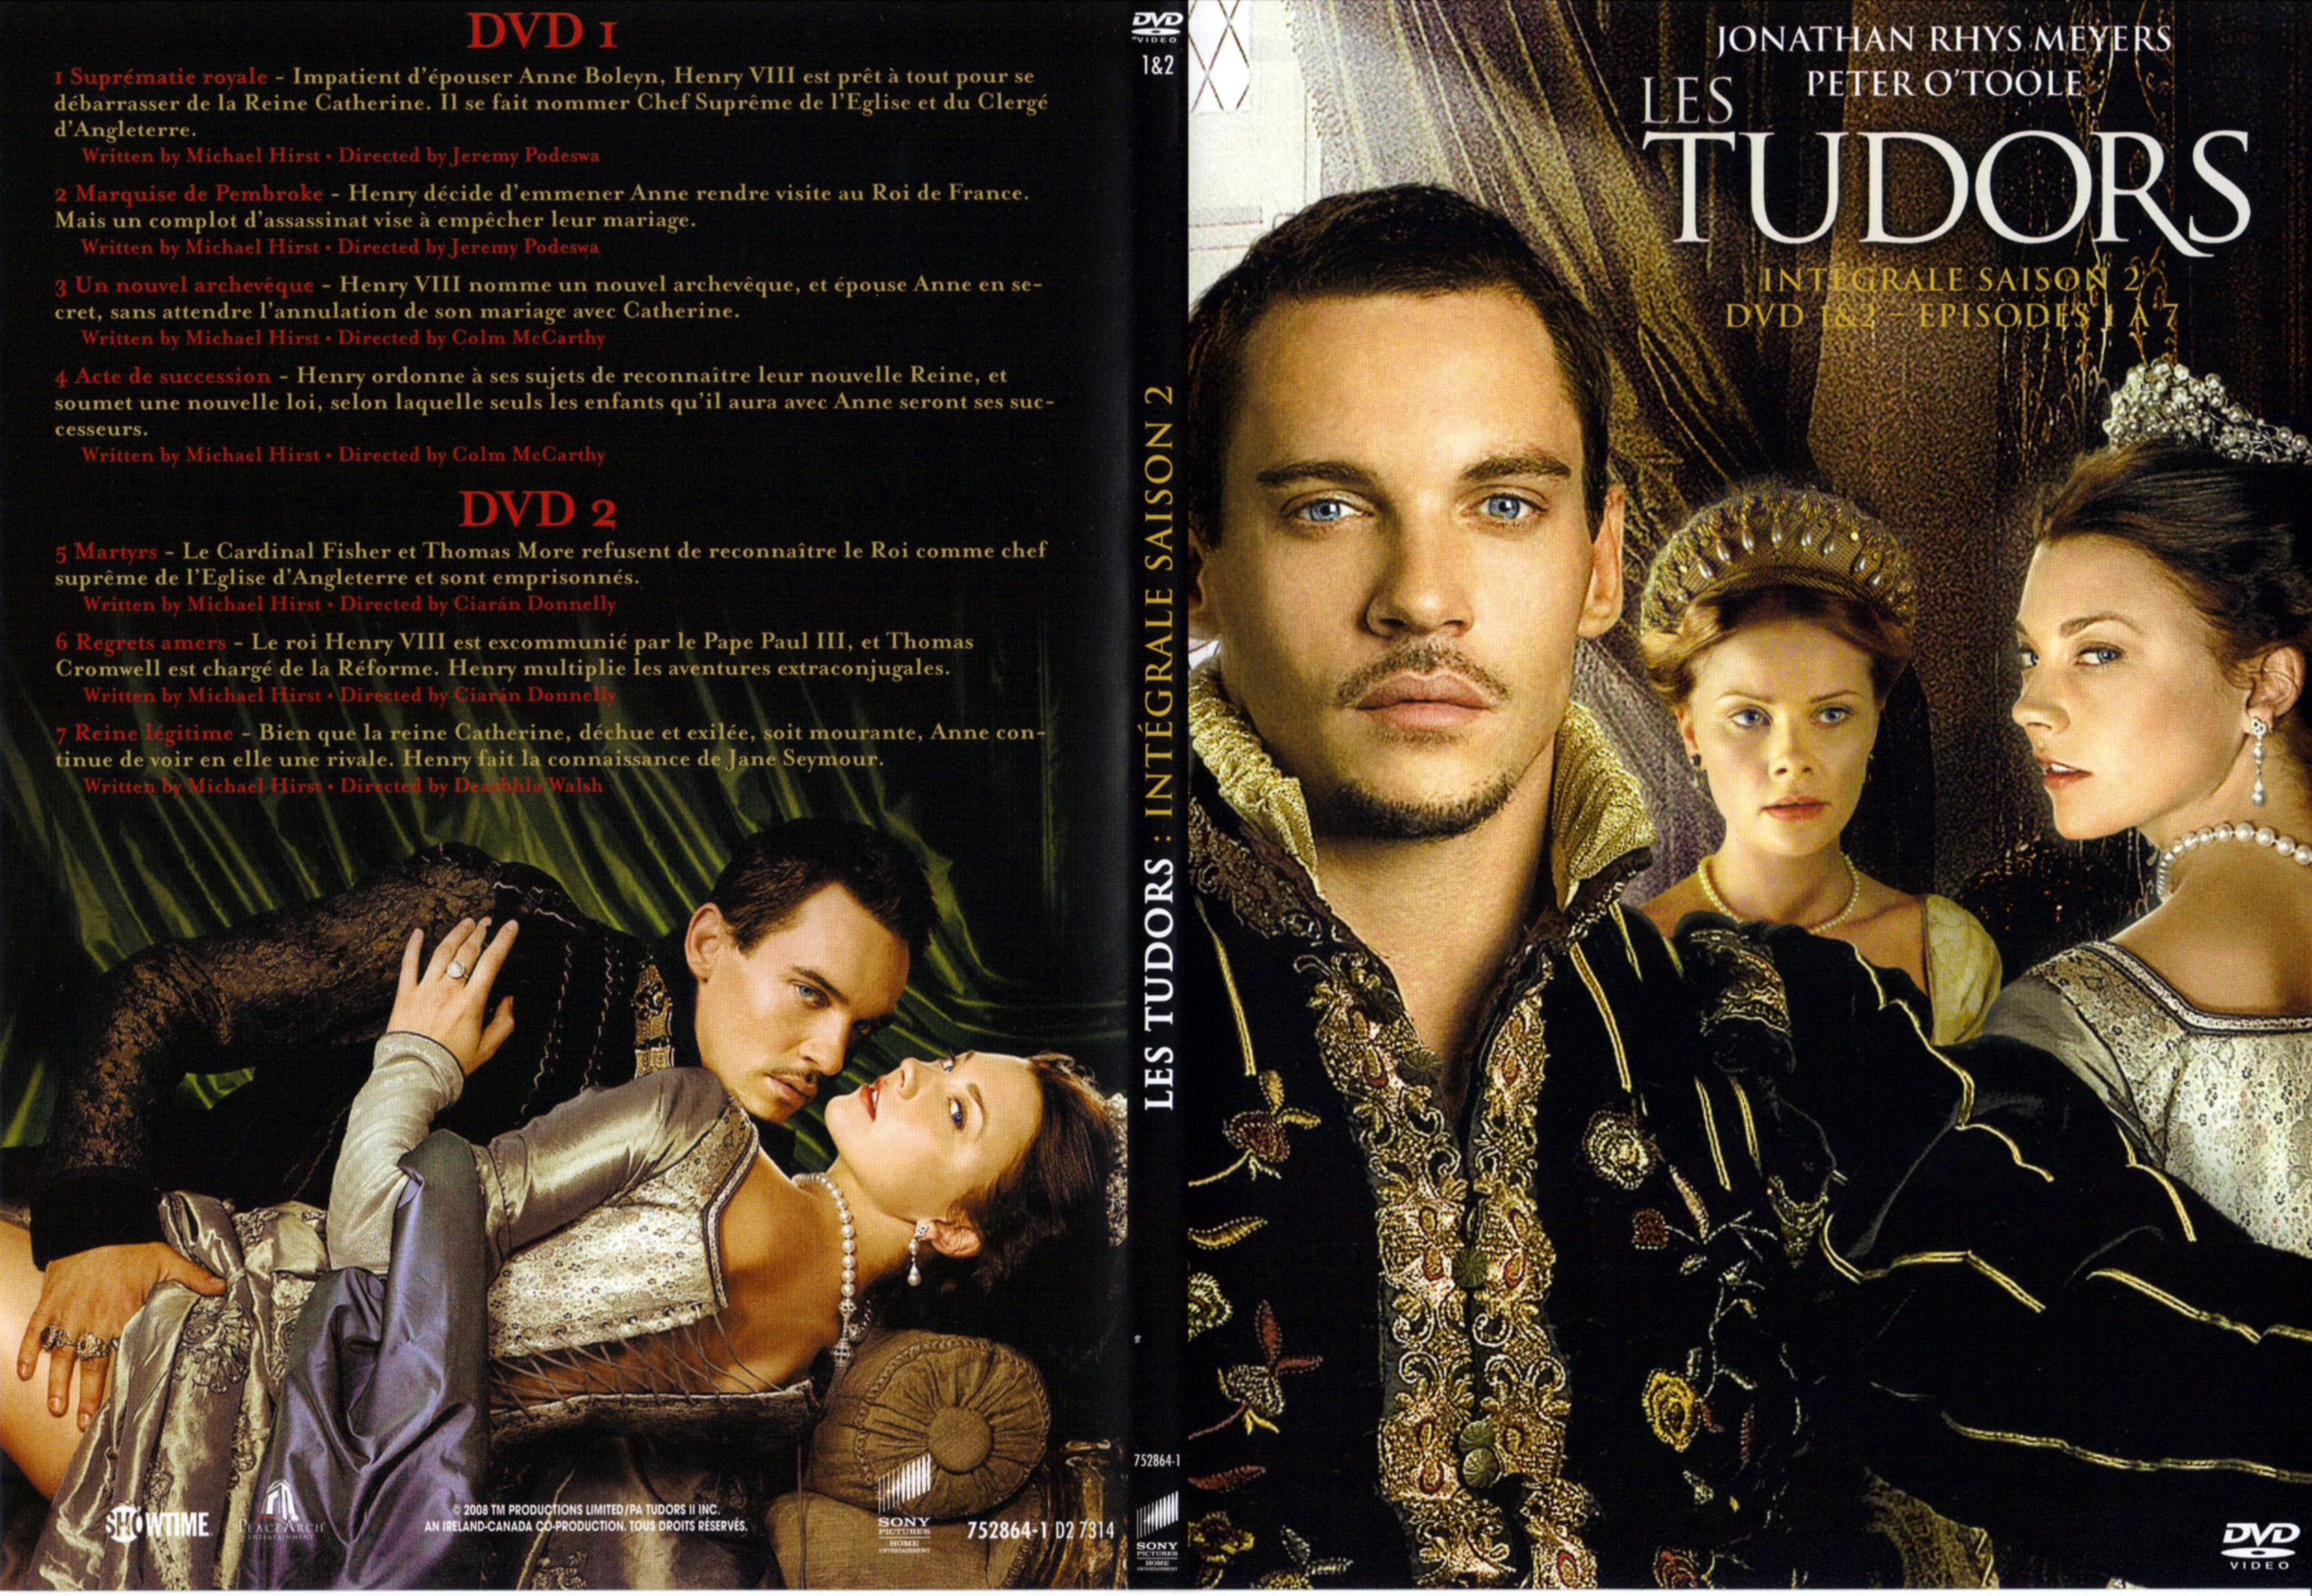 Jaquette DVD Les Tudors saison 2 DVD 1